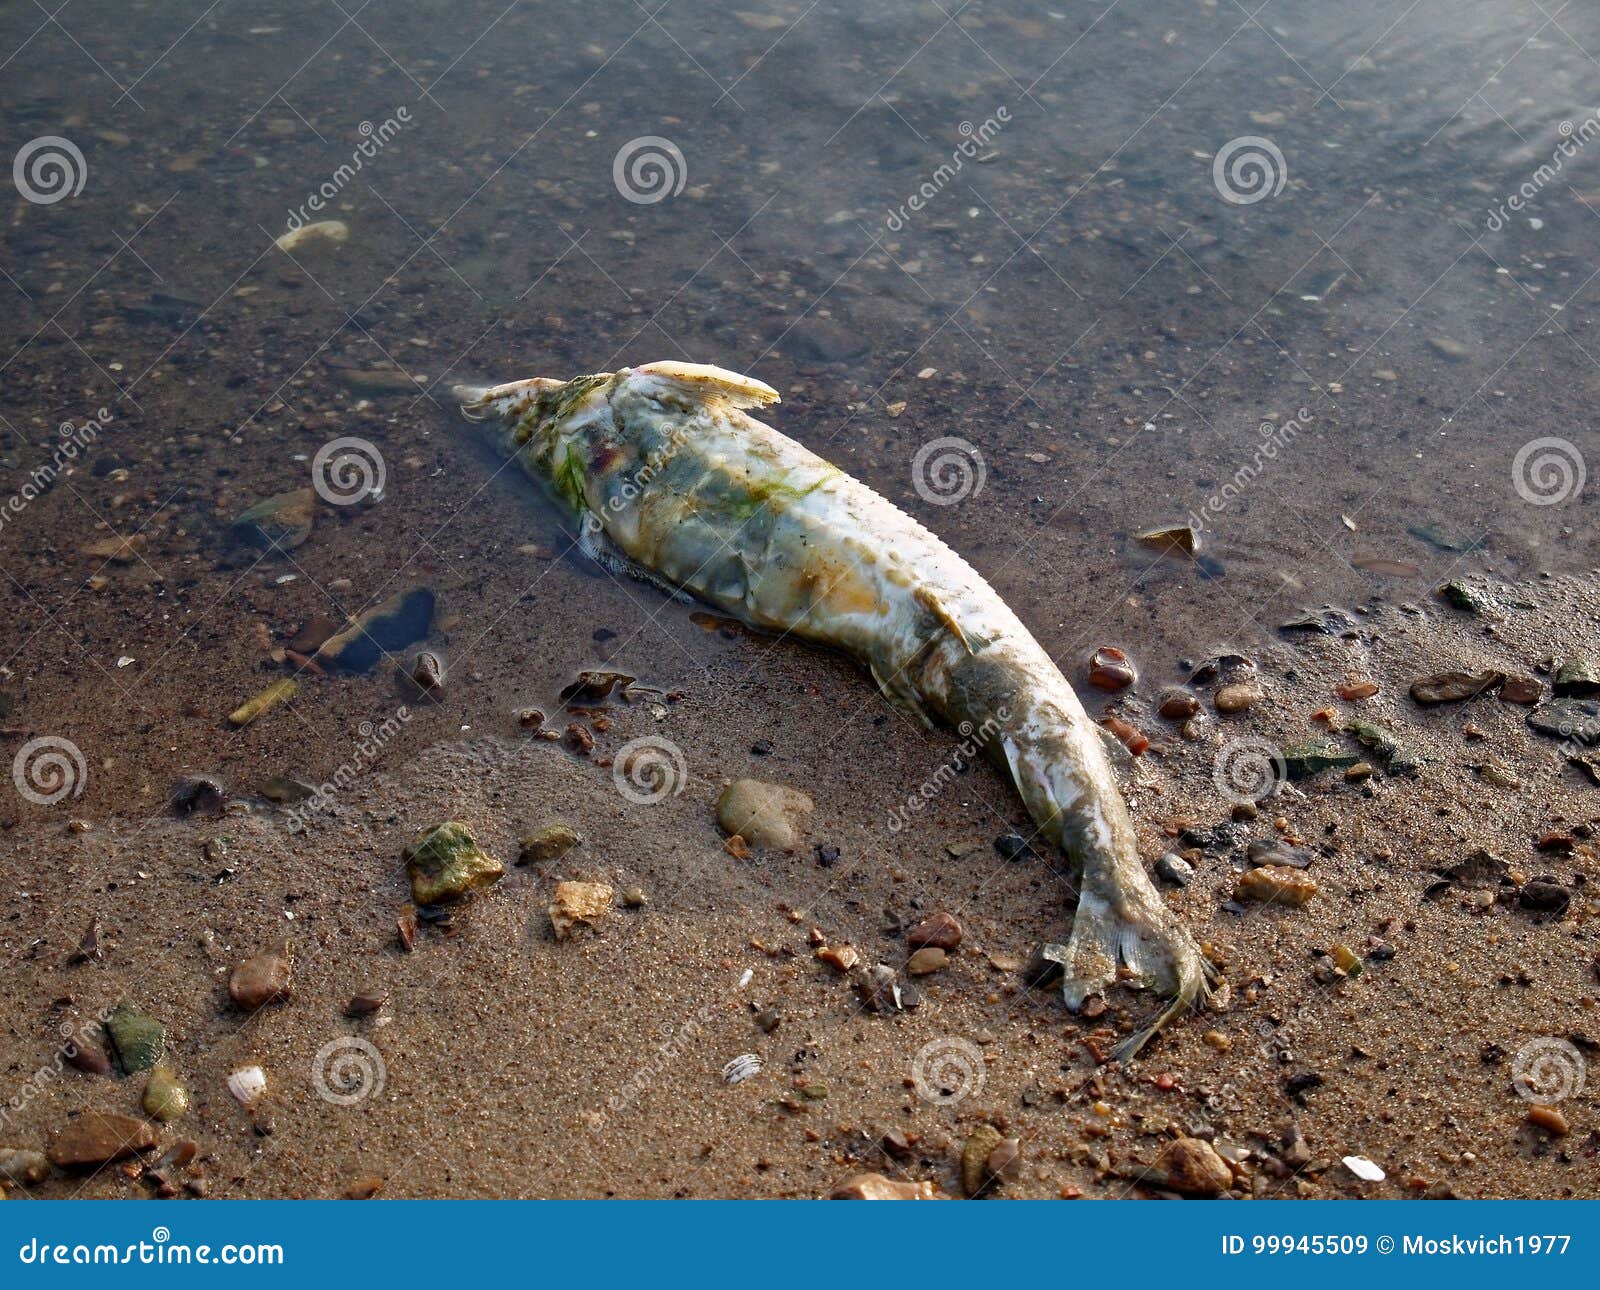 К чему снятся мертвые рыбы в воде